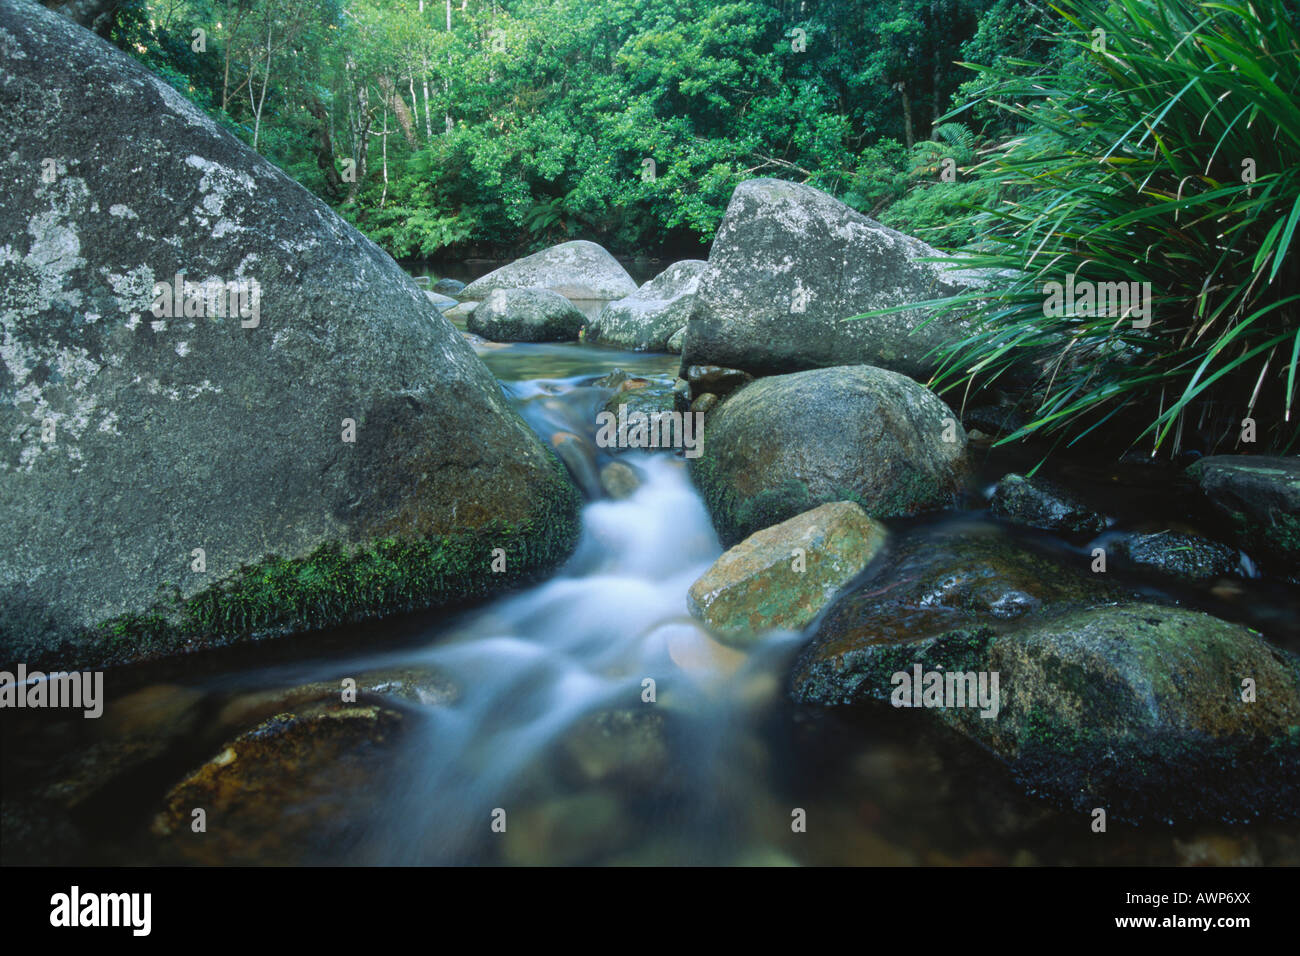 Ruisseau de la forêt tropicale, le Parc National Washpool, New South Wales, Australie, Océanie Banque D'Images